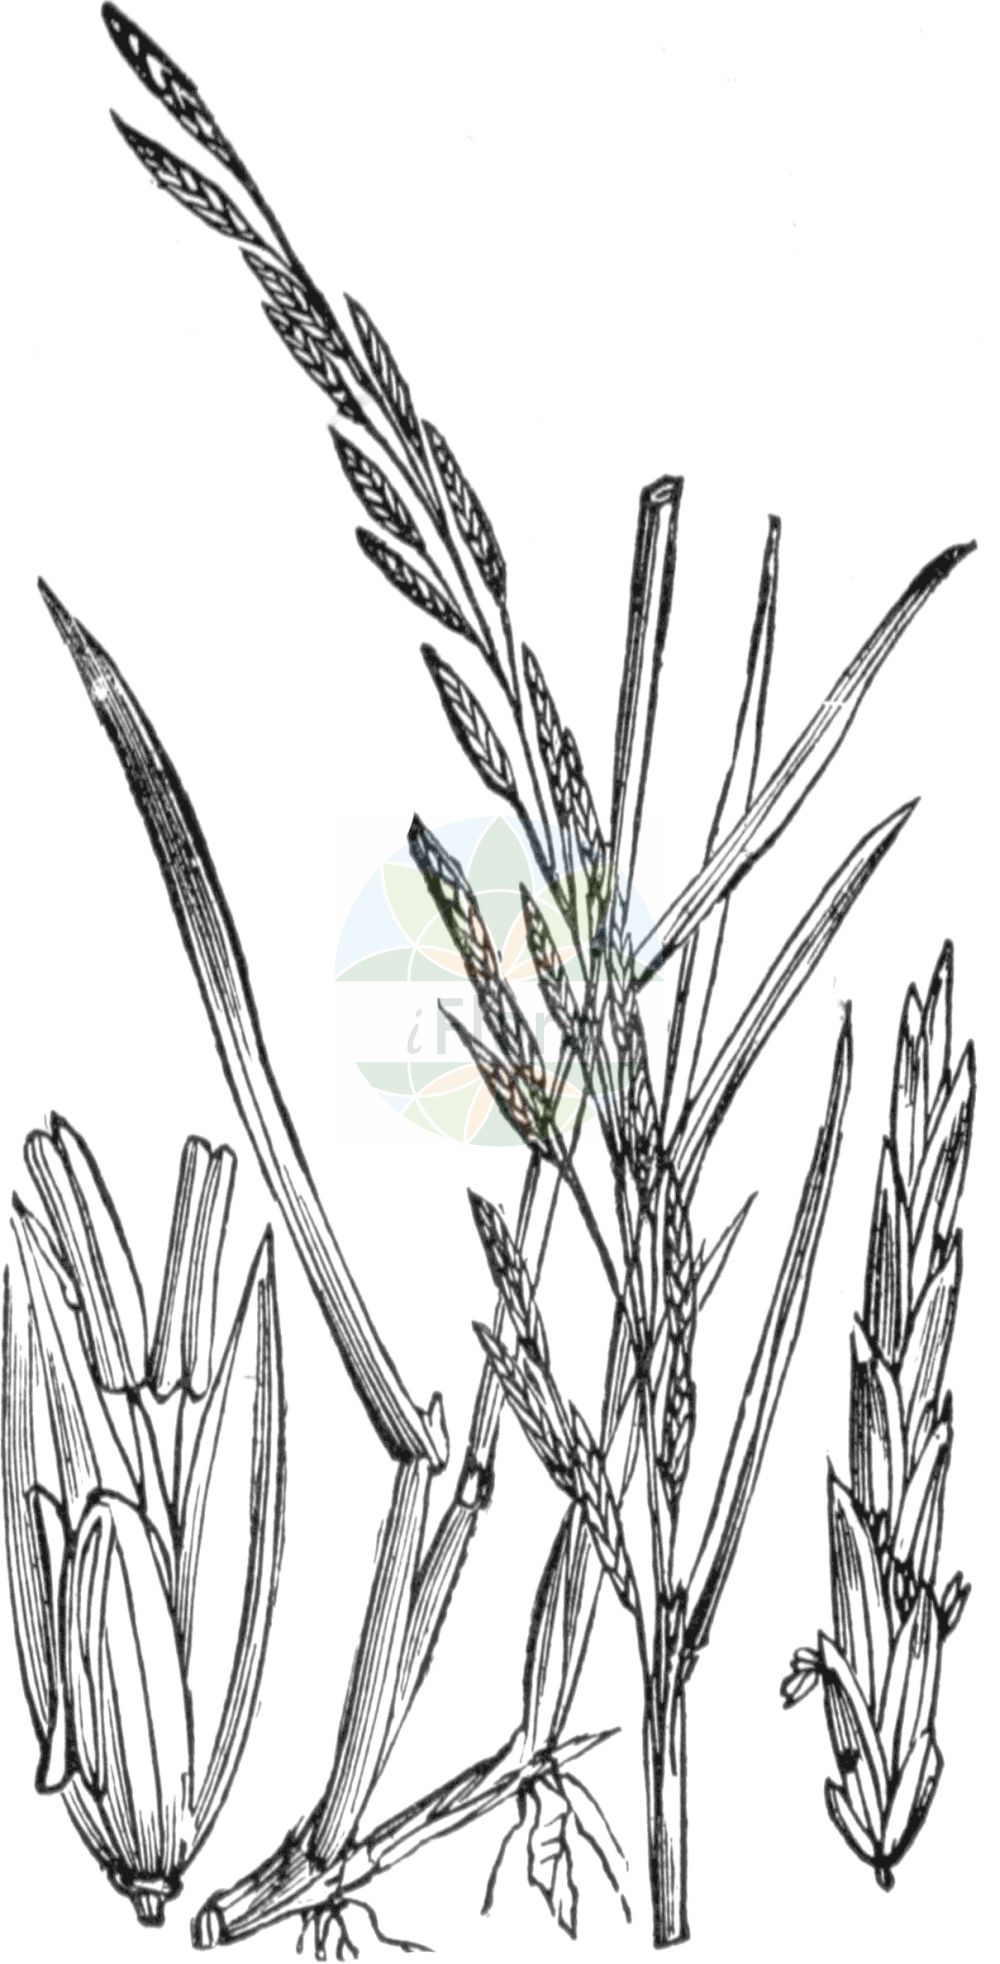 Historische Abbildung von Glyceria fluitans (Flutender Schwaden - Floating Sweet-grass). Das Bild zeigt Blatt, Bluete, Frucht und Same. ---- Historical Drawing of Glyceria fluitans (Flutender Schwaden - Floating Sweet-grass). The image is showing leaf, flower, fruit and seed.(Glyceria fluitans,Flutender Schwaden,Floating Sweet-grass,Festuca fluitans,Glyceria fluitans,Flutender Schwaden,Flutender Schwaden,Mannagras,Floating Sweet-grass,Common Flotegrass,Flotegrass,Water Mannagrass,Glyceria,Schwaden,Mannagrass,Poaceae,Süßgräser,Grass family,Blatt,Bluete,Frucht,Same,leaf,flower,fruit,seed,Fitch et al. (1880))